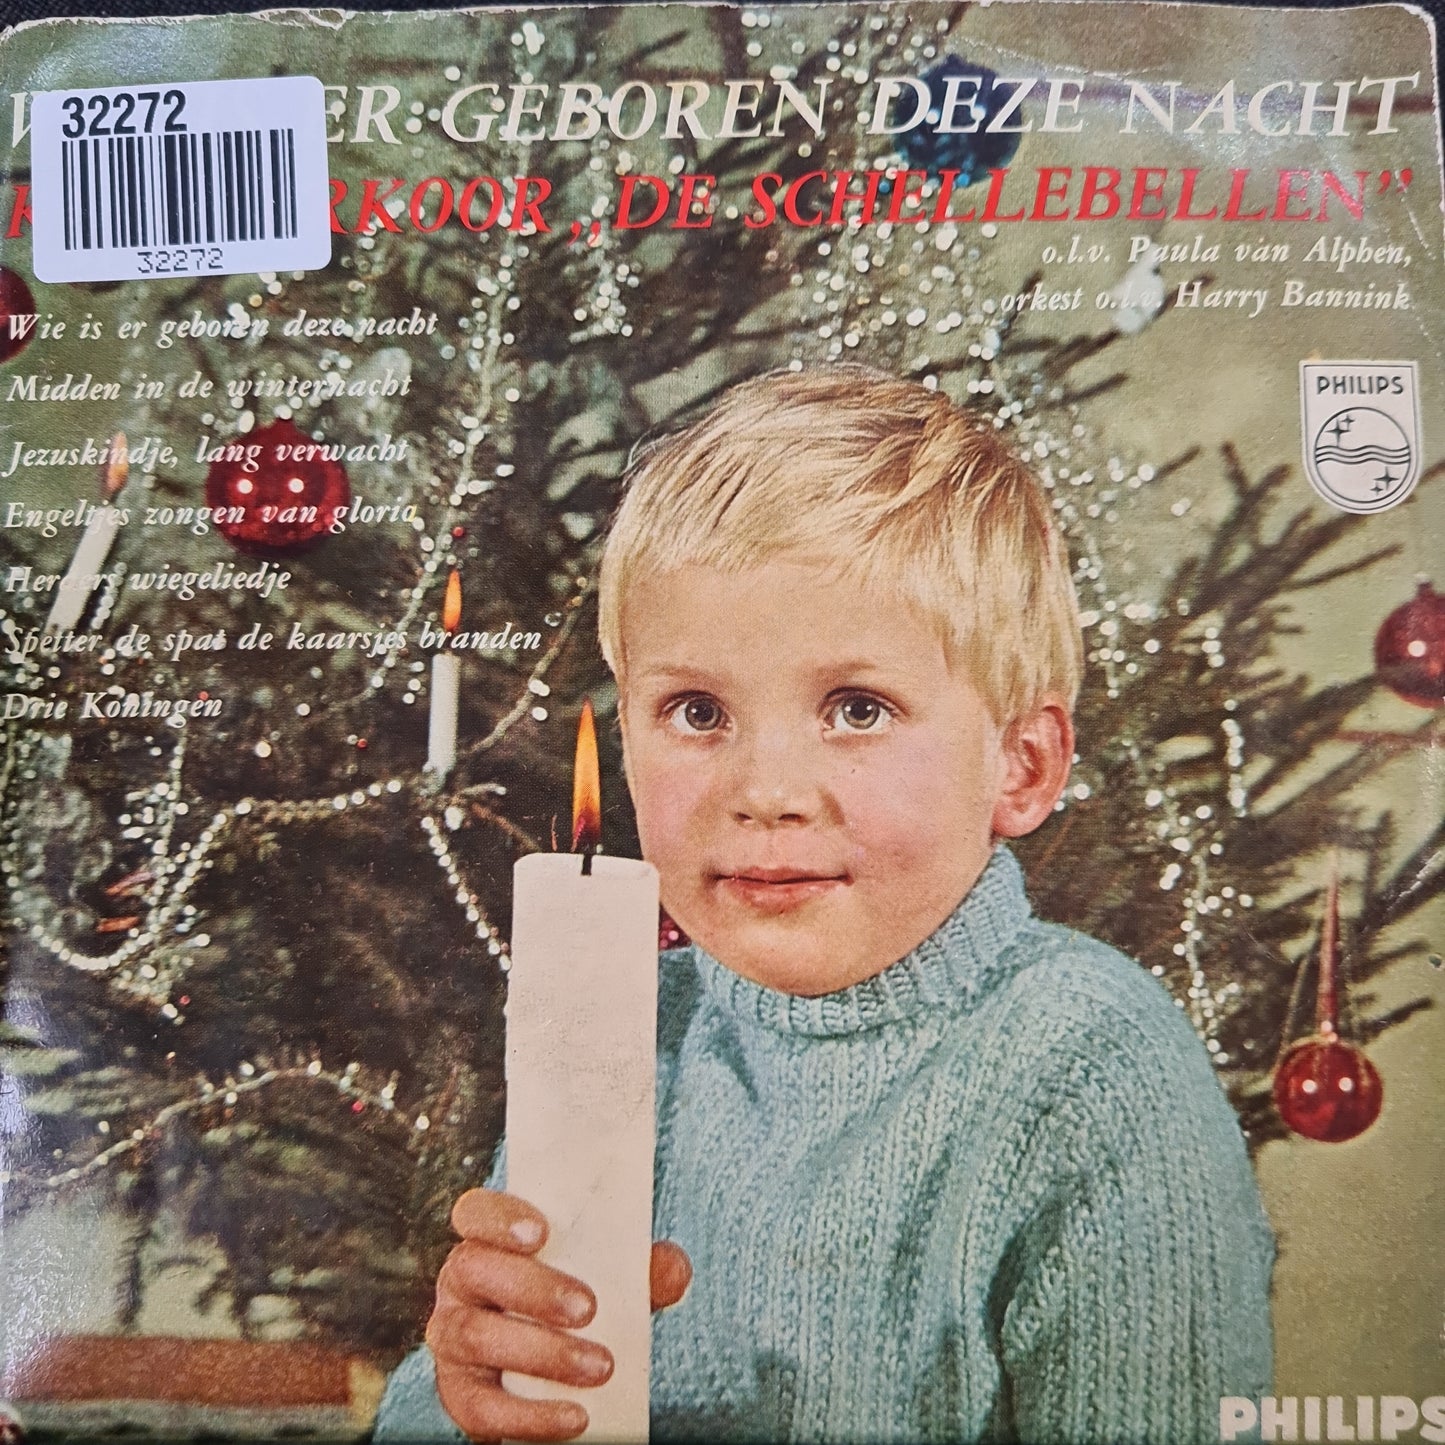 Schellebellen - Wie is er geboren deze nacht? 32272 Vinyl Singles EP VINYLSINGLES.NL